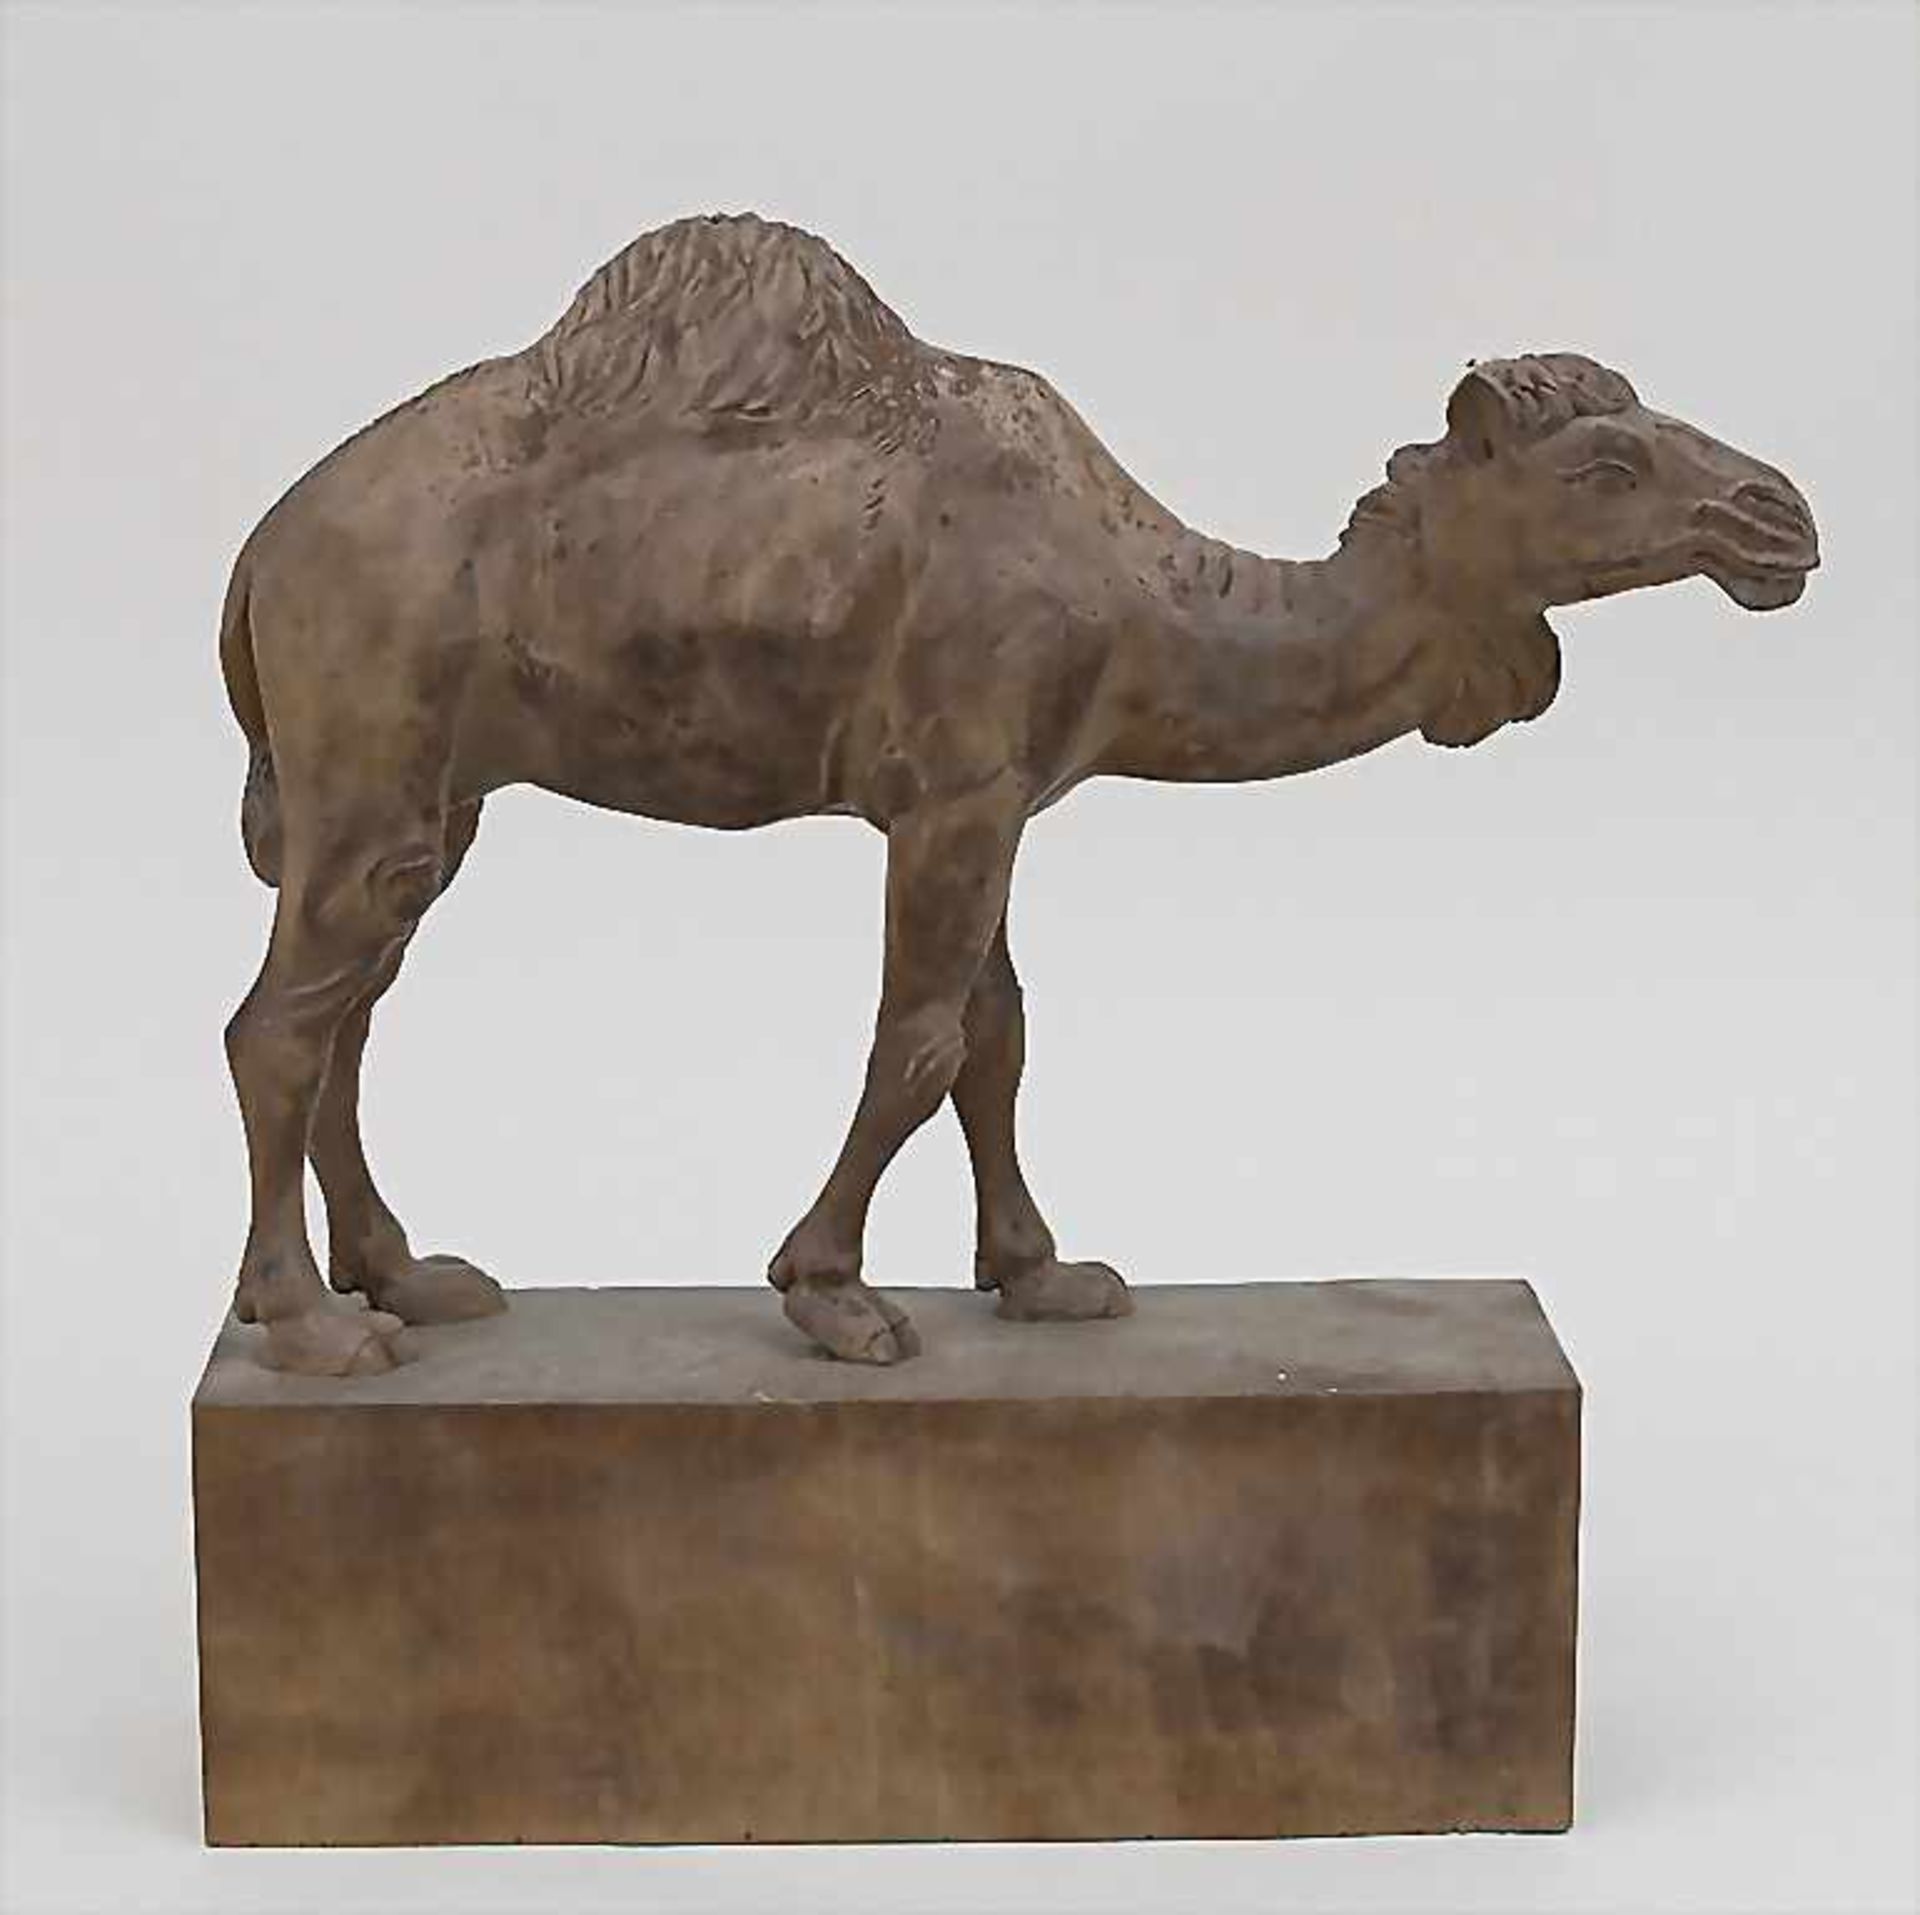 Unbekannter Künstler (20. Jh.), 'Kamel' / 'A camel' Technik: Holz, geschnitzt, Signatur: unsigniert,